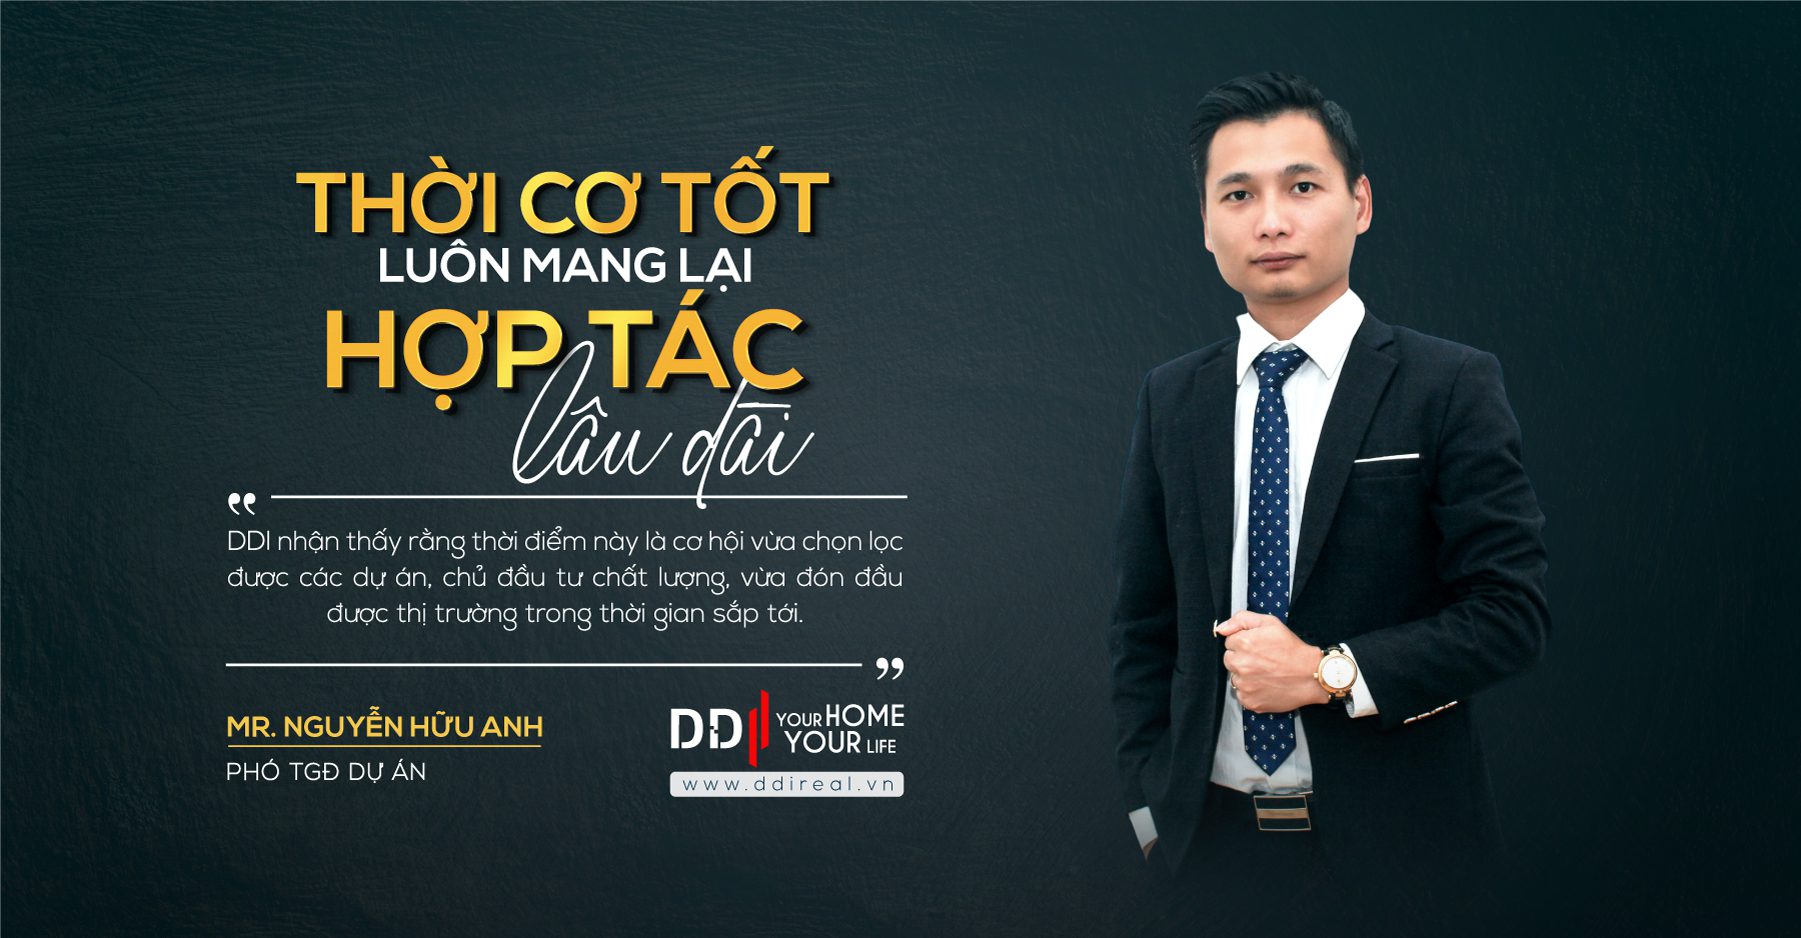 Ông Nguyễn Hữu Anh - Phó Tổng Giám đốc DDI